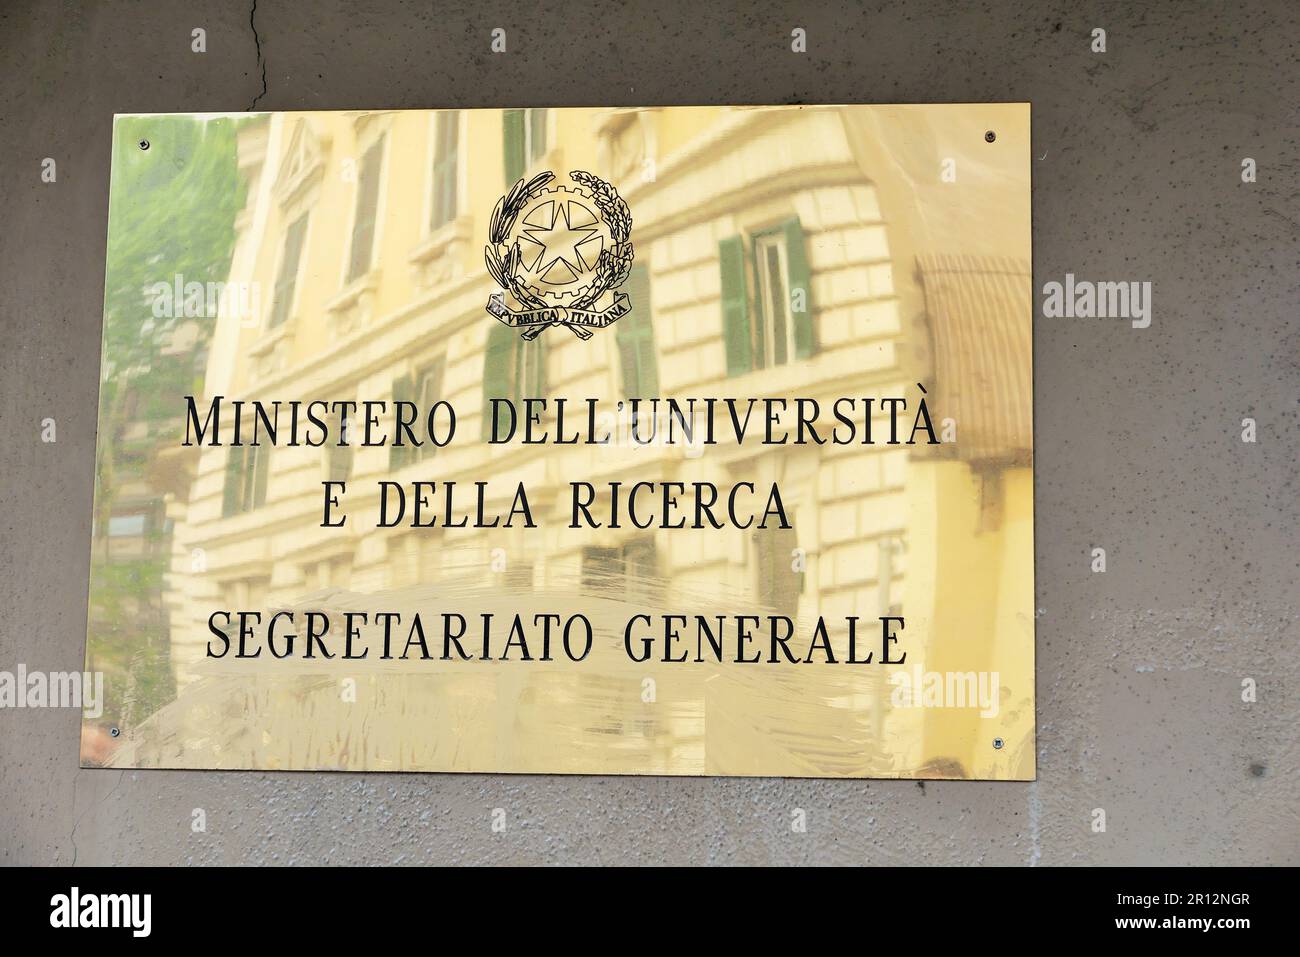 SIGN OF THE  MINISTERO DELL'UNIVERSITA' E DELLA RICERCA Stock Photo